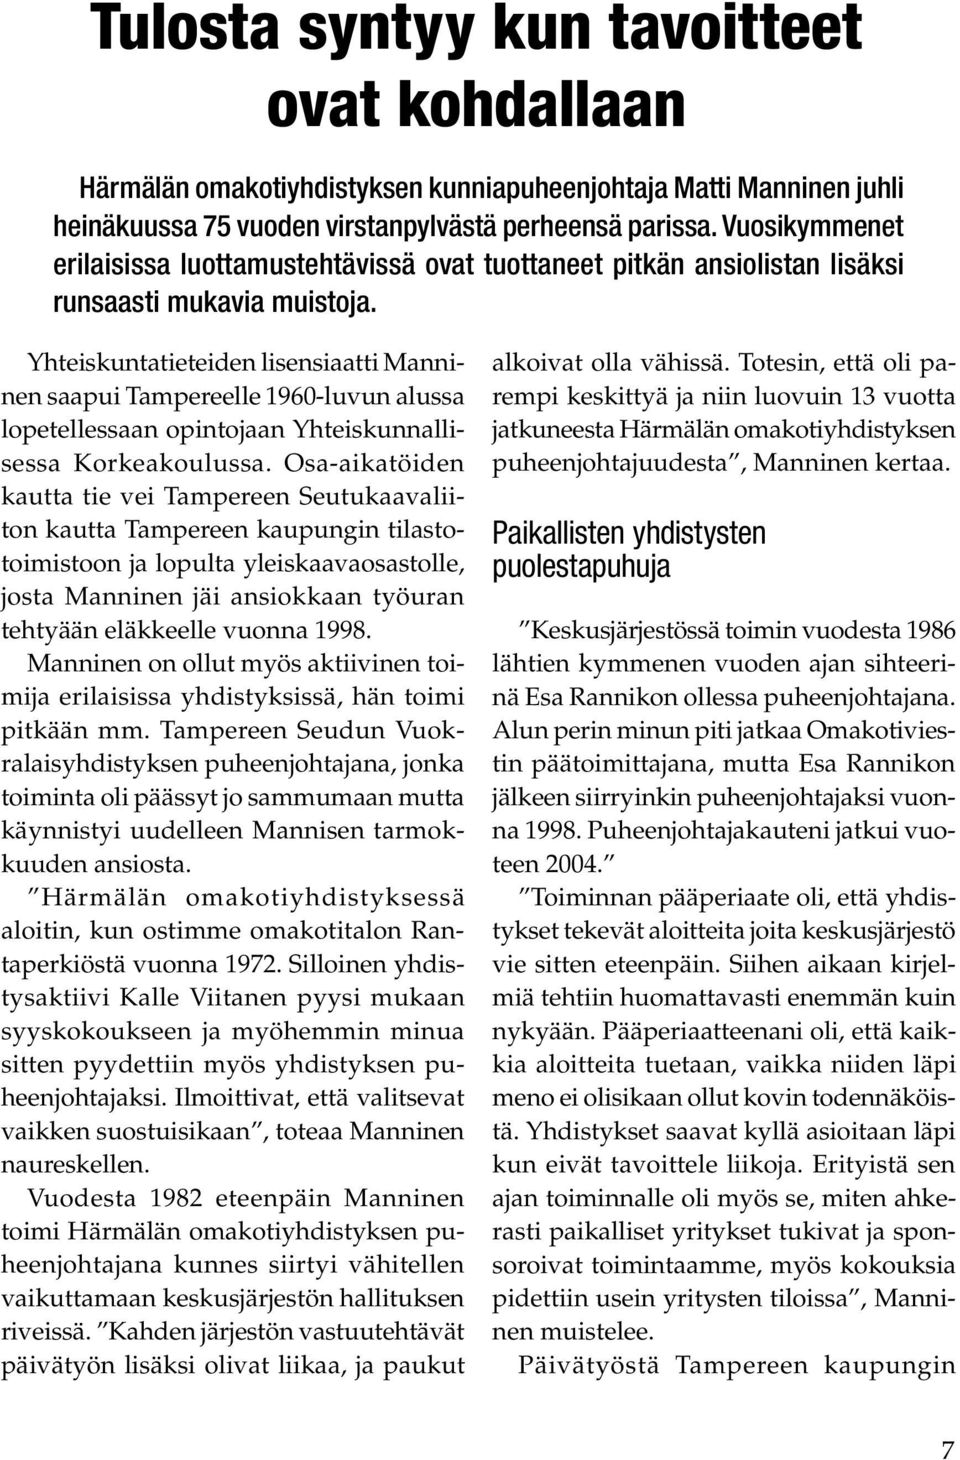 Yhteiskuntatieteiden lisensiaatti Manninen saapui Tampereelle 1960-luvun alussa lopetellessaan opintojaan Yhteiskunnallisessa Korkeakoulussa.